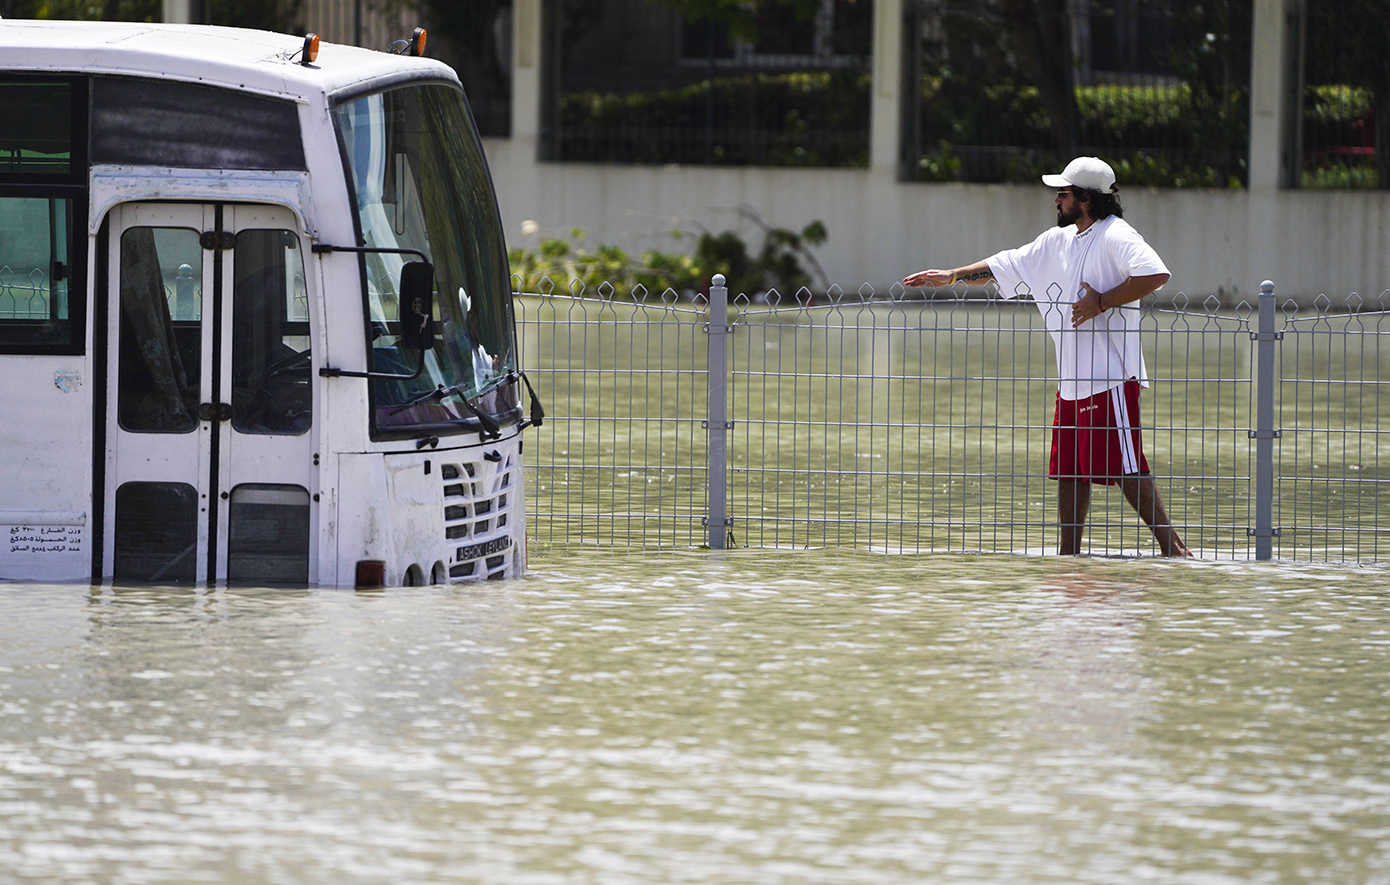 Τις ζημιές μετρούν οι κάτοικοι στο Ντουμπάι μετά τις πλημμύρες – Πού υπάρχουν τα μεγαλύτερα προβλήματα